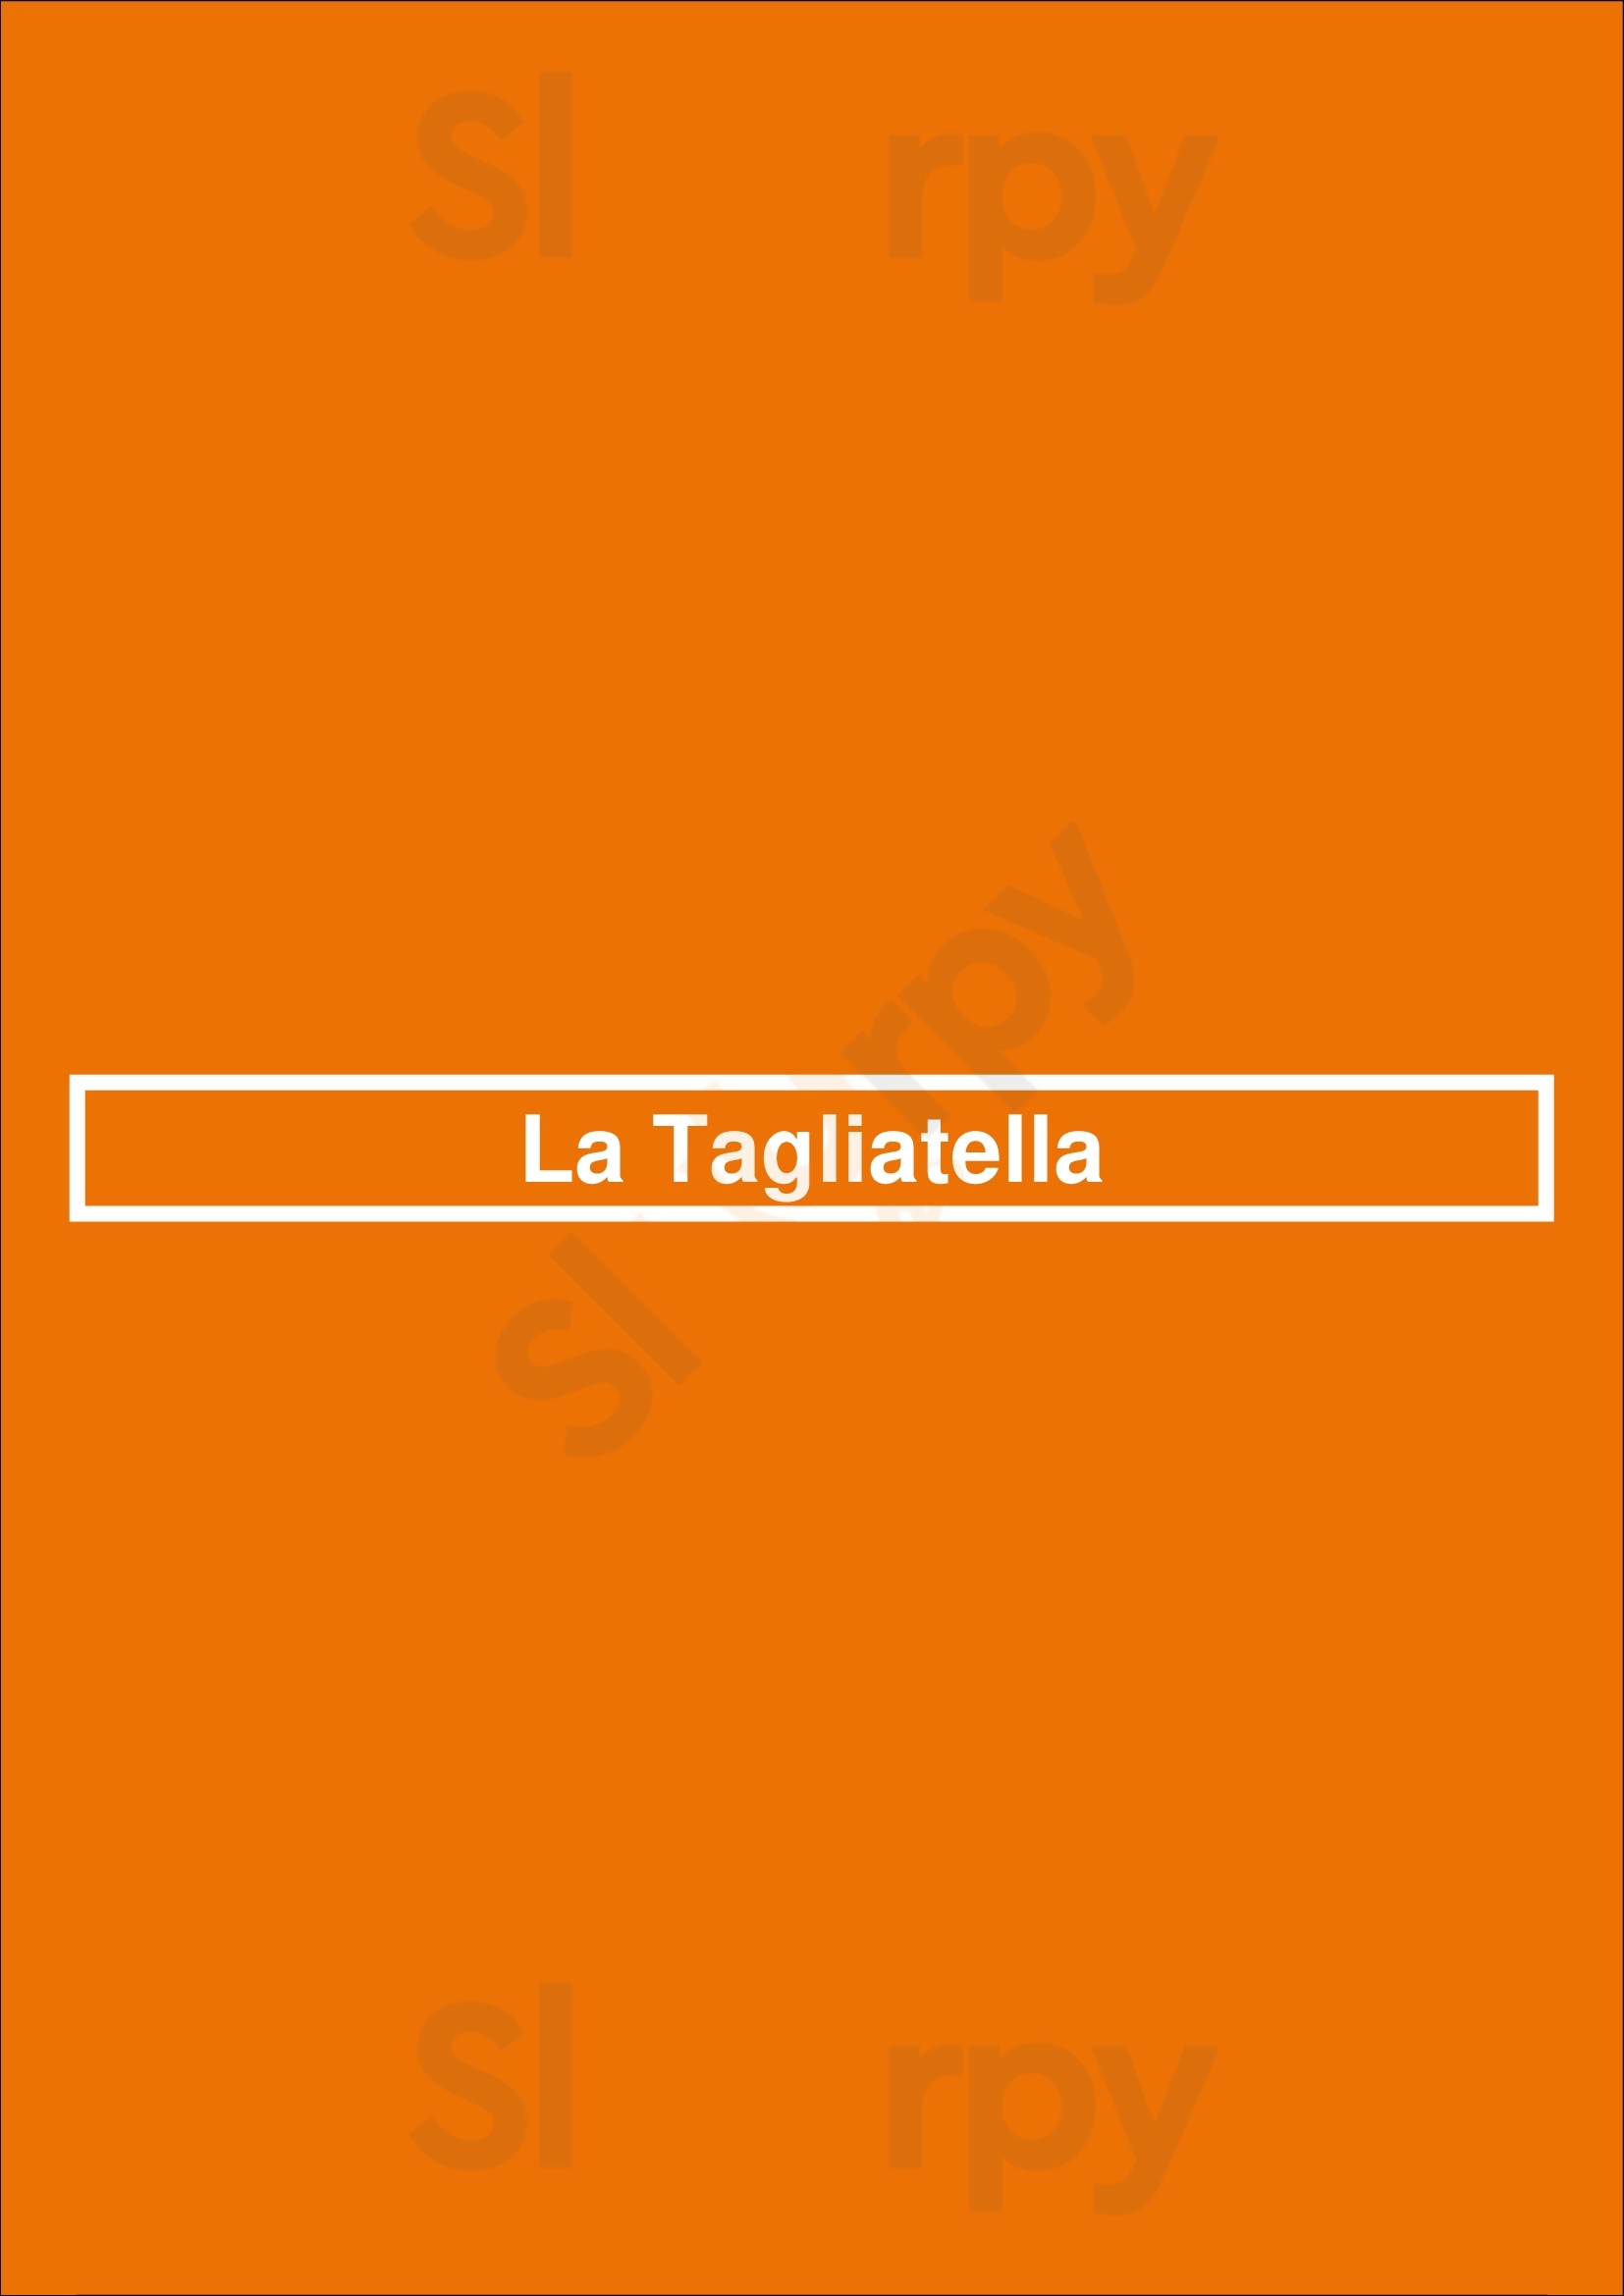 La Tagliatella C/ Clara Campoamor, Zaragoza Zaragoza Menu - 1